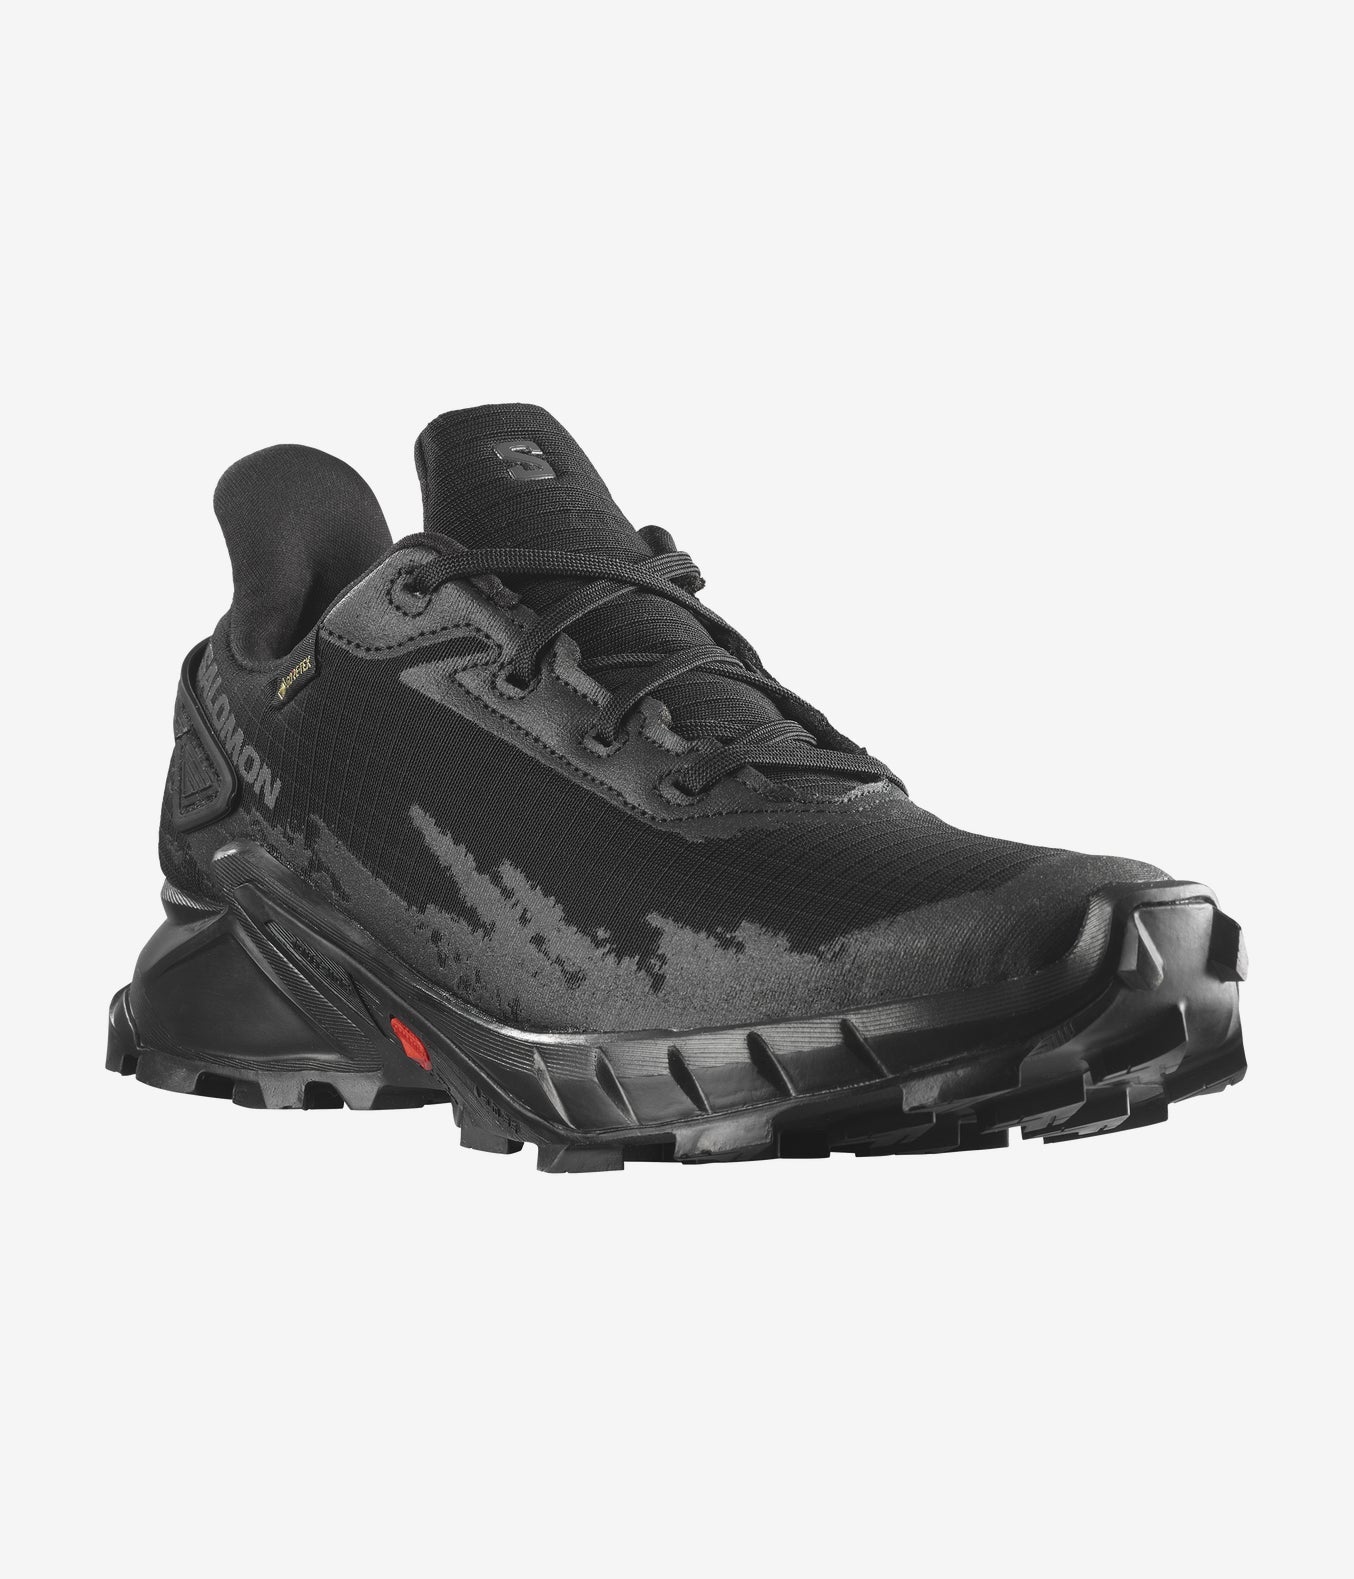 Salomon Men's ALPHACROSS 4 Trail Running Shoes, Black